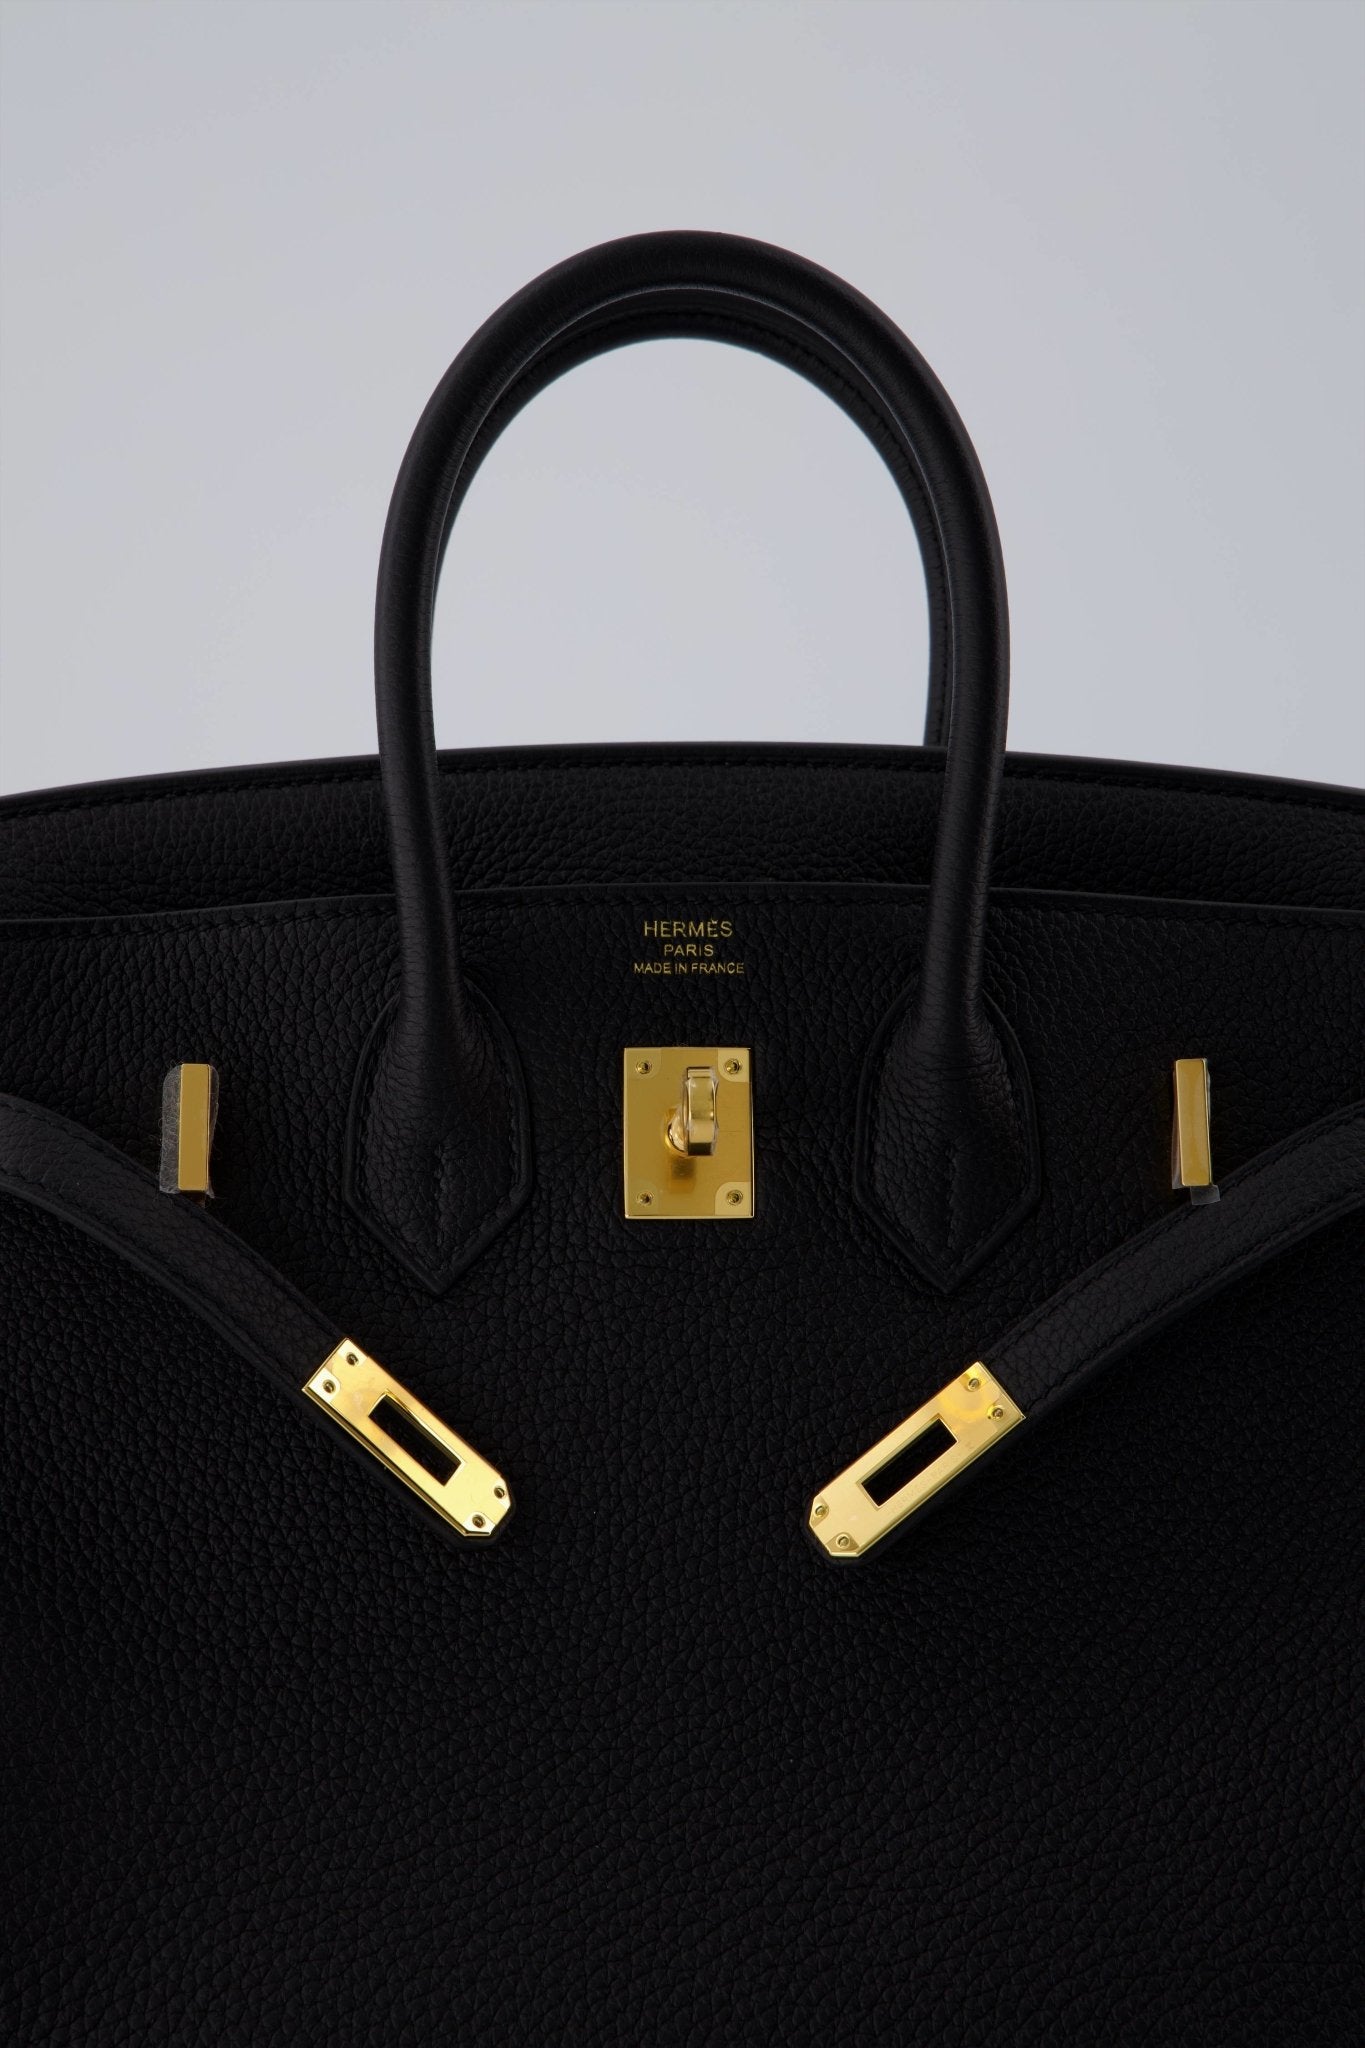 Hermes Birkin 25 Bag Black Togo Leather with Gold Hardware